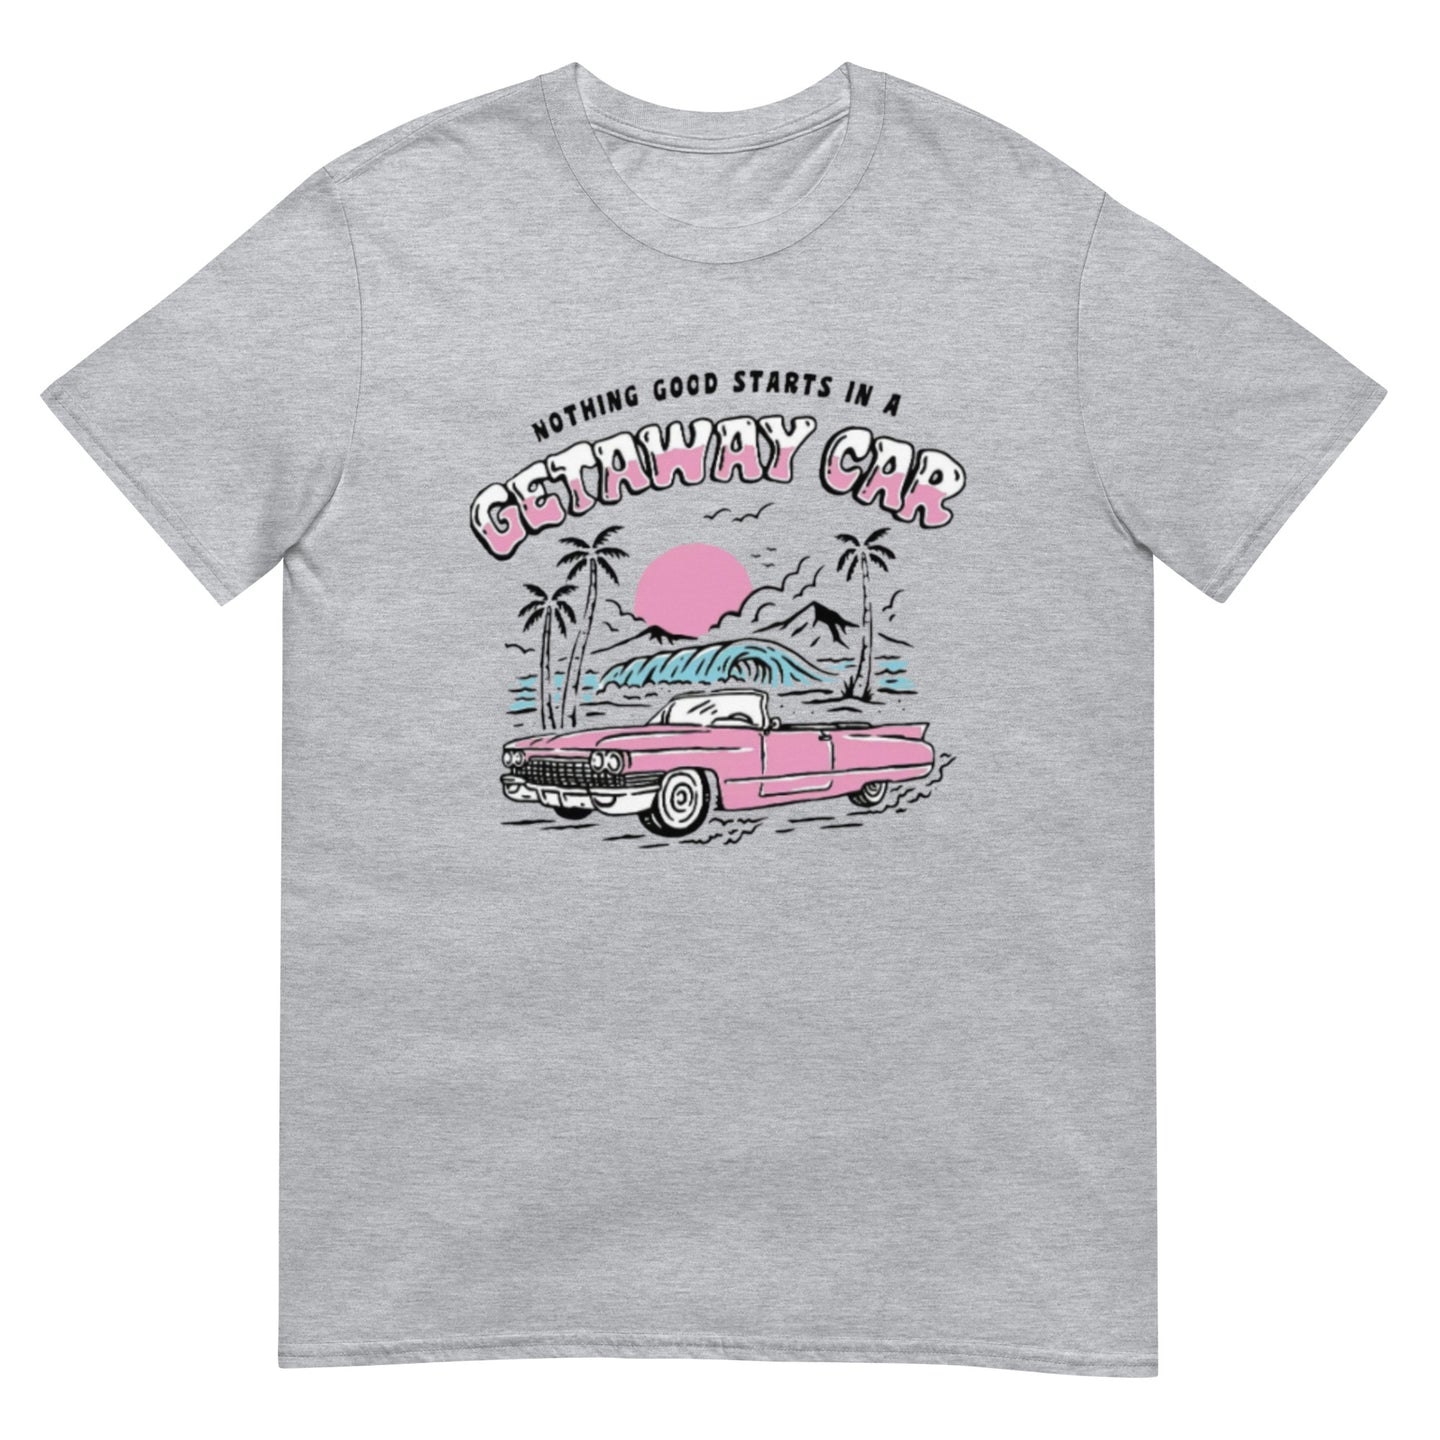 Get away car Short-Sleeve Unisex T-Shirt